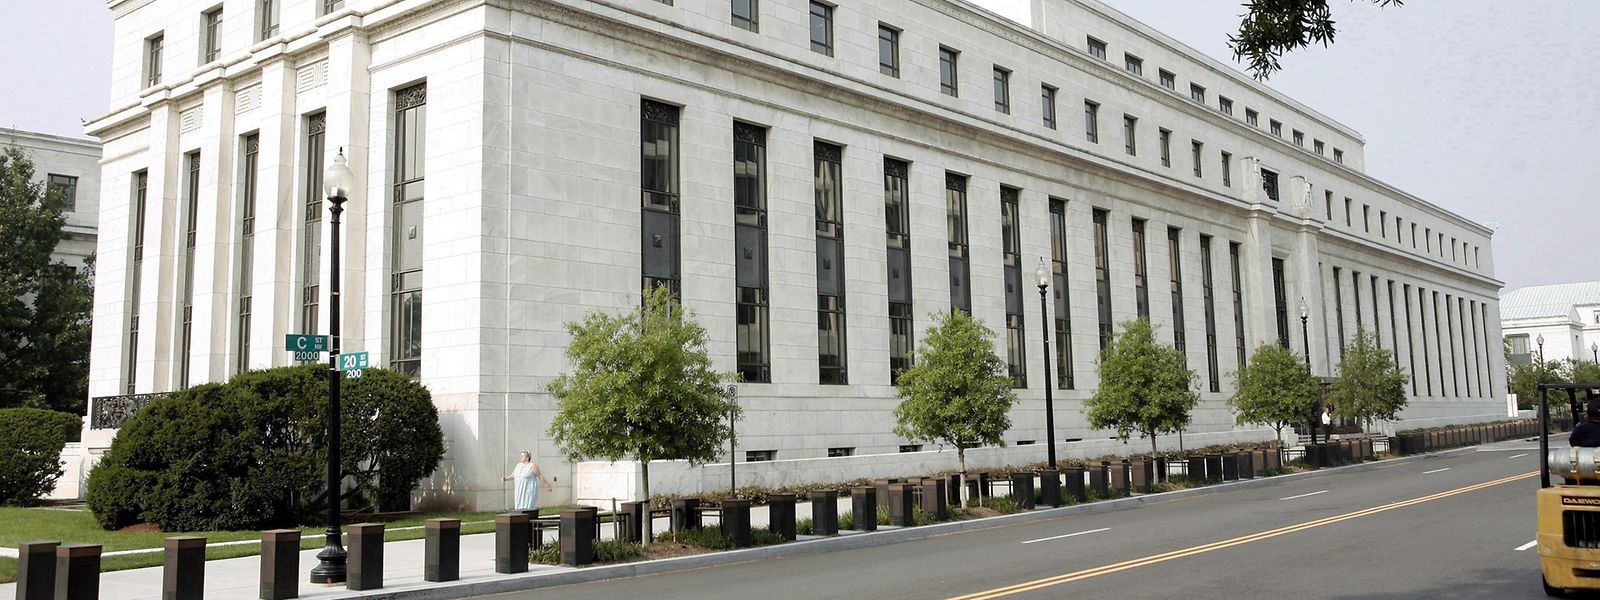 Das Gebäude der US-amerikanischen Notenbank Federal Reserve